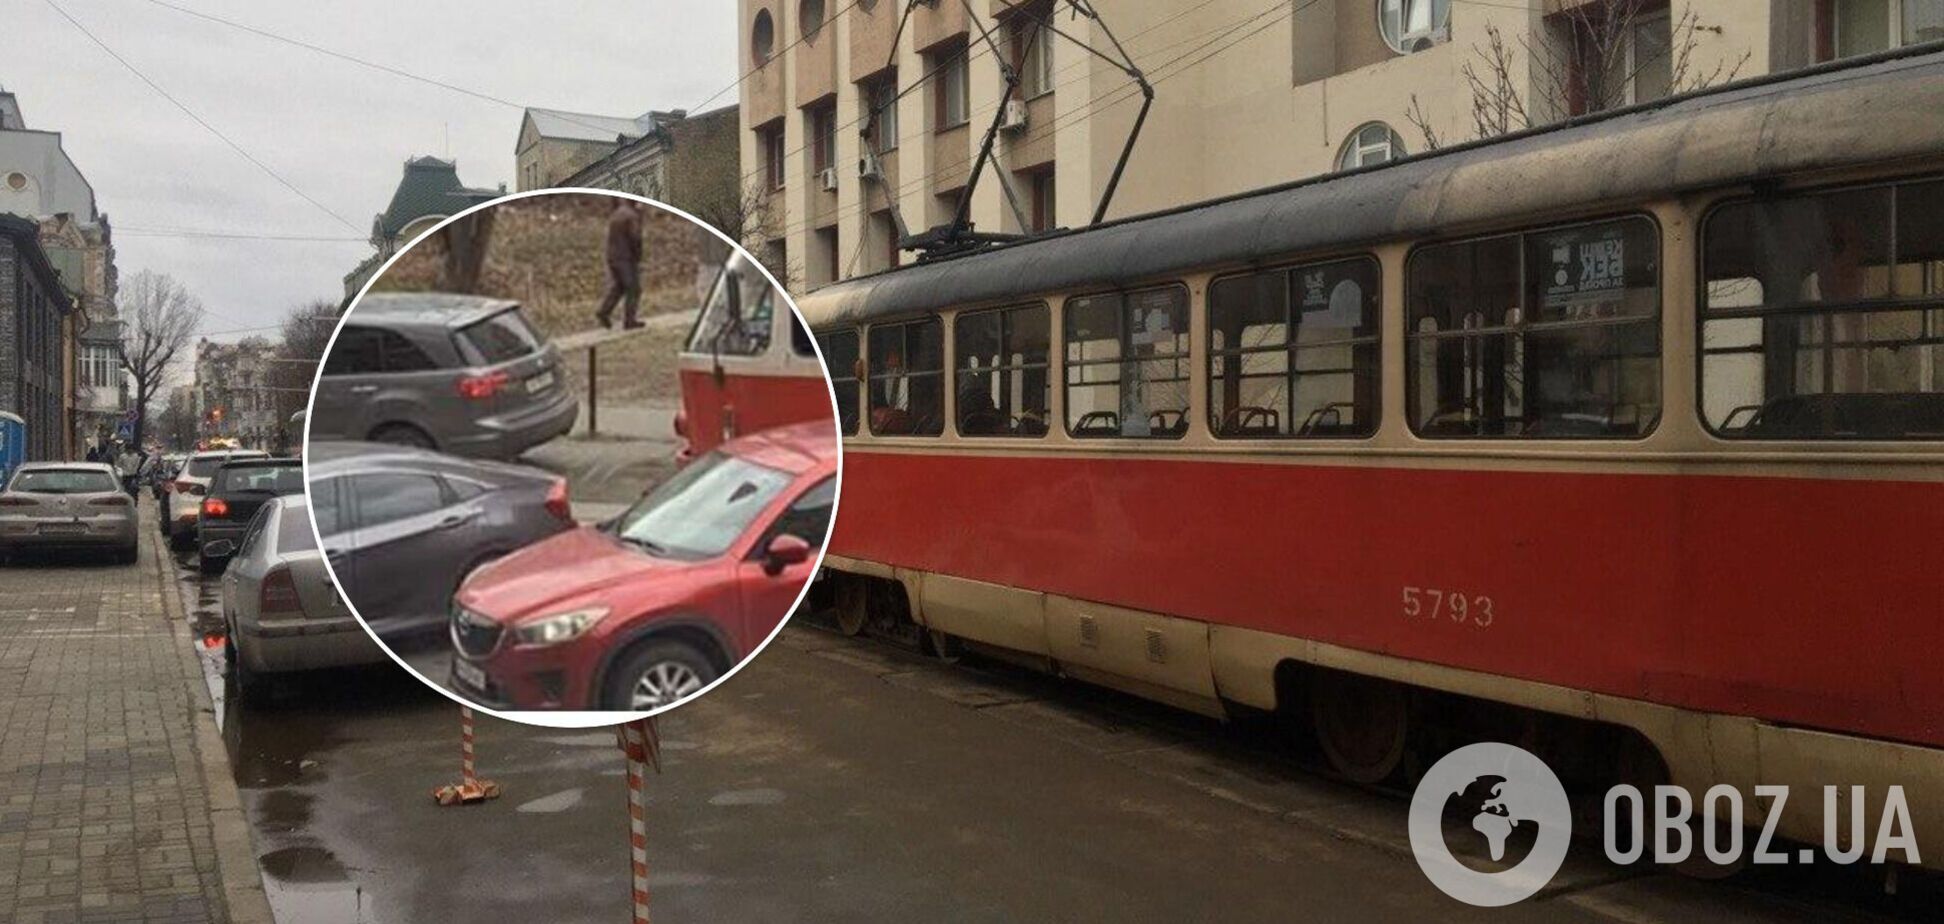 Инцидент произошел на улице Дмитриевской